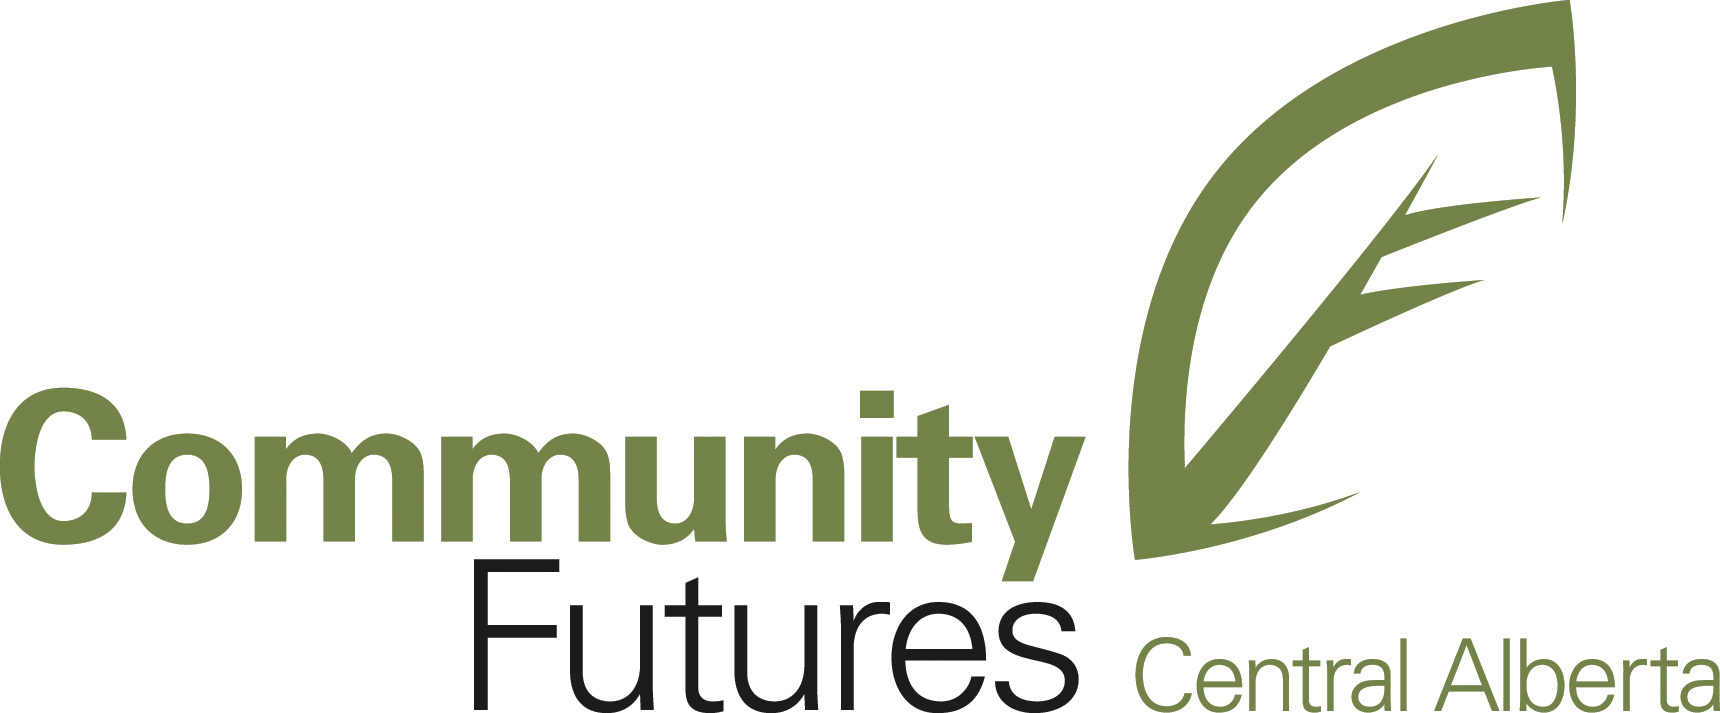 Community Future Central Alberta